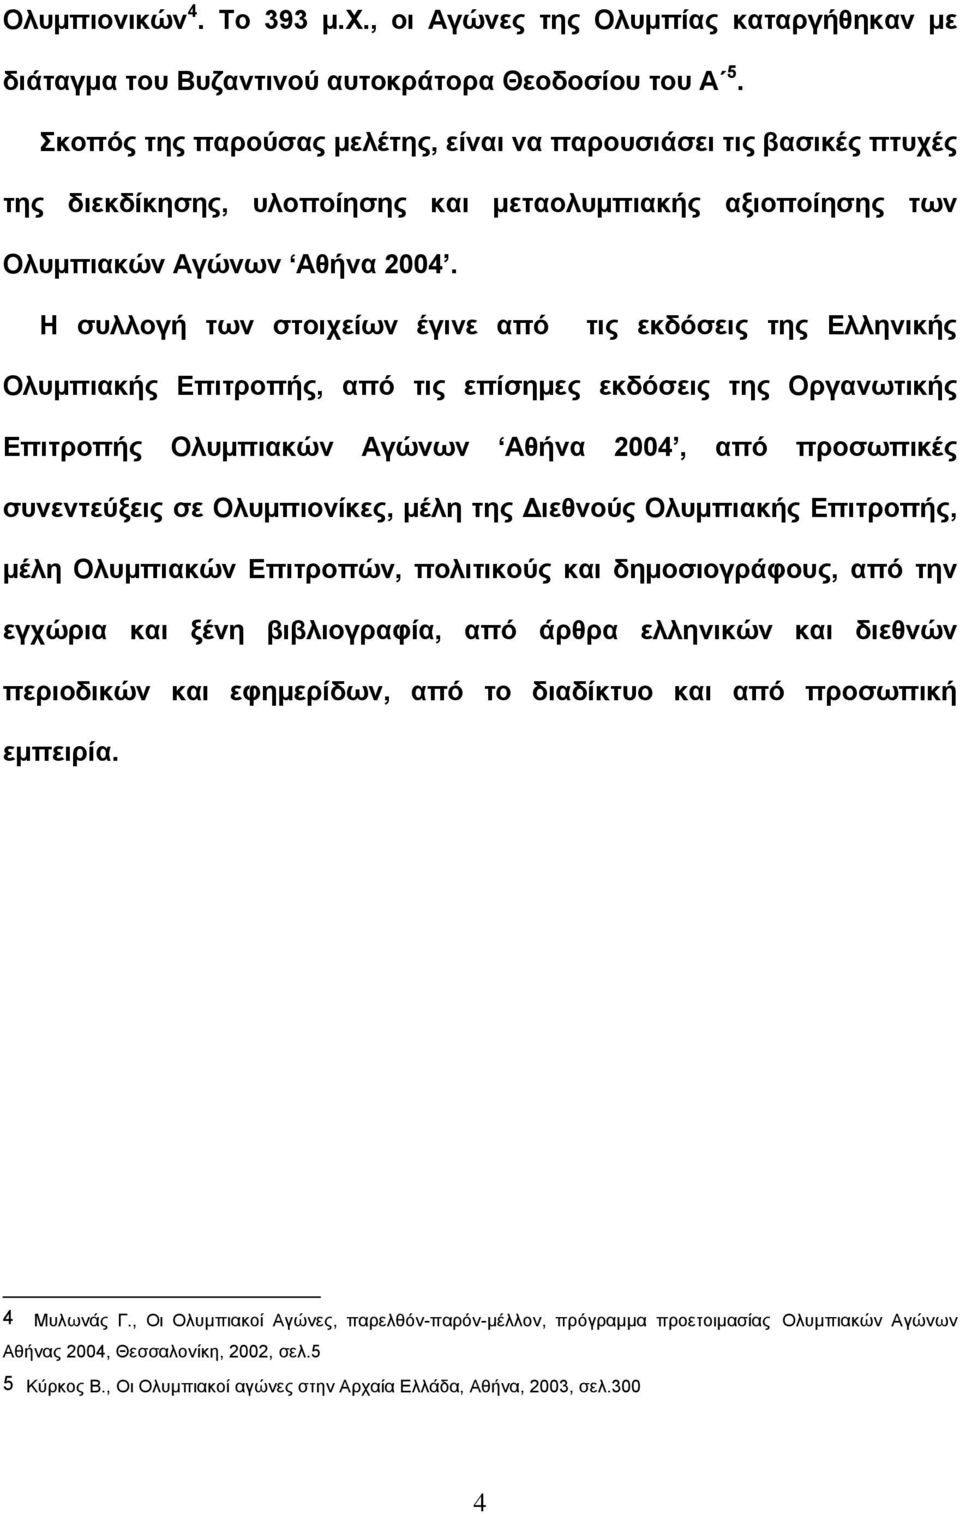 Η συλλογή των στοιχείων έγινε από τις εκδόσεις της Ελληνικής Ολυμπιακής Επιτροπής, από τις επίσημες εκδόσεις της Οργανωτικής Επιτροπής Ολυμπιακών Αγώνων Αθήνα 2004, από προσωπικές συνεντεύξεις σε